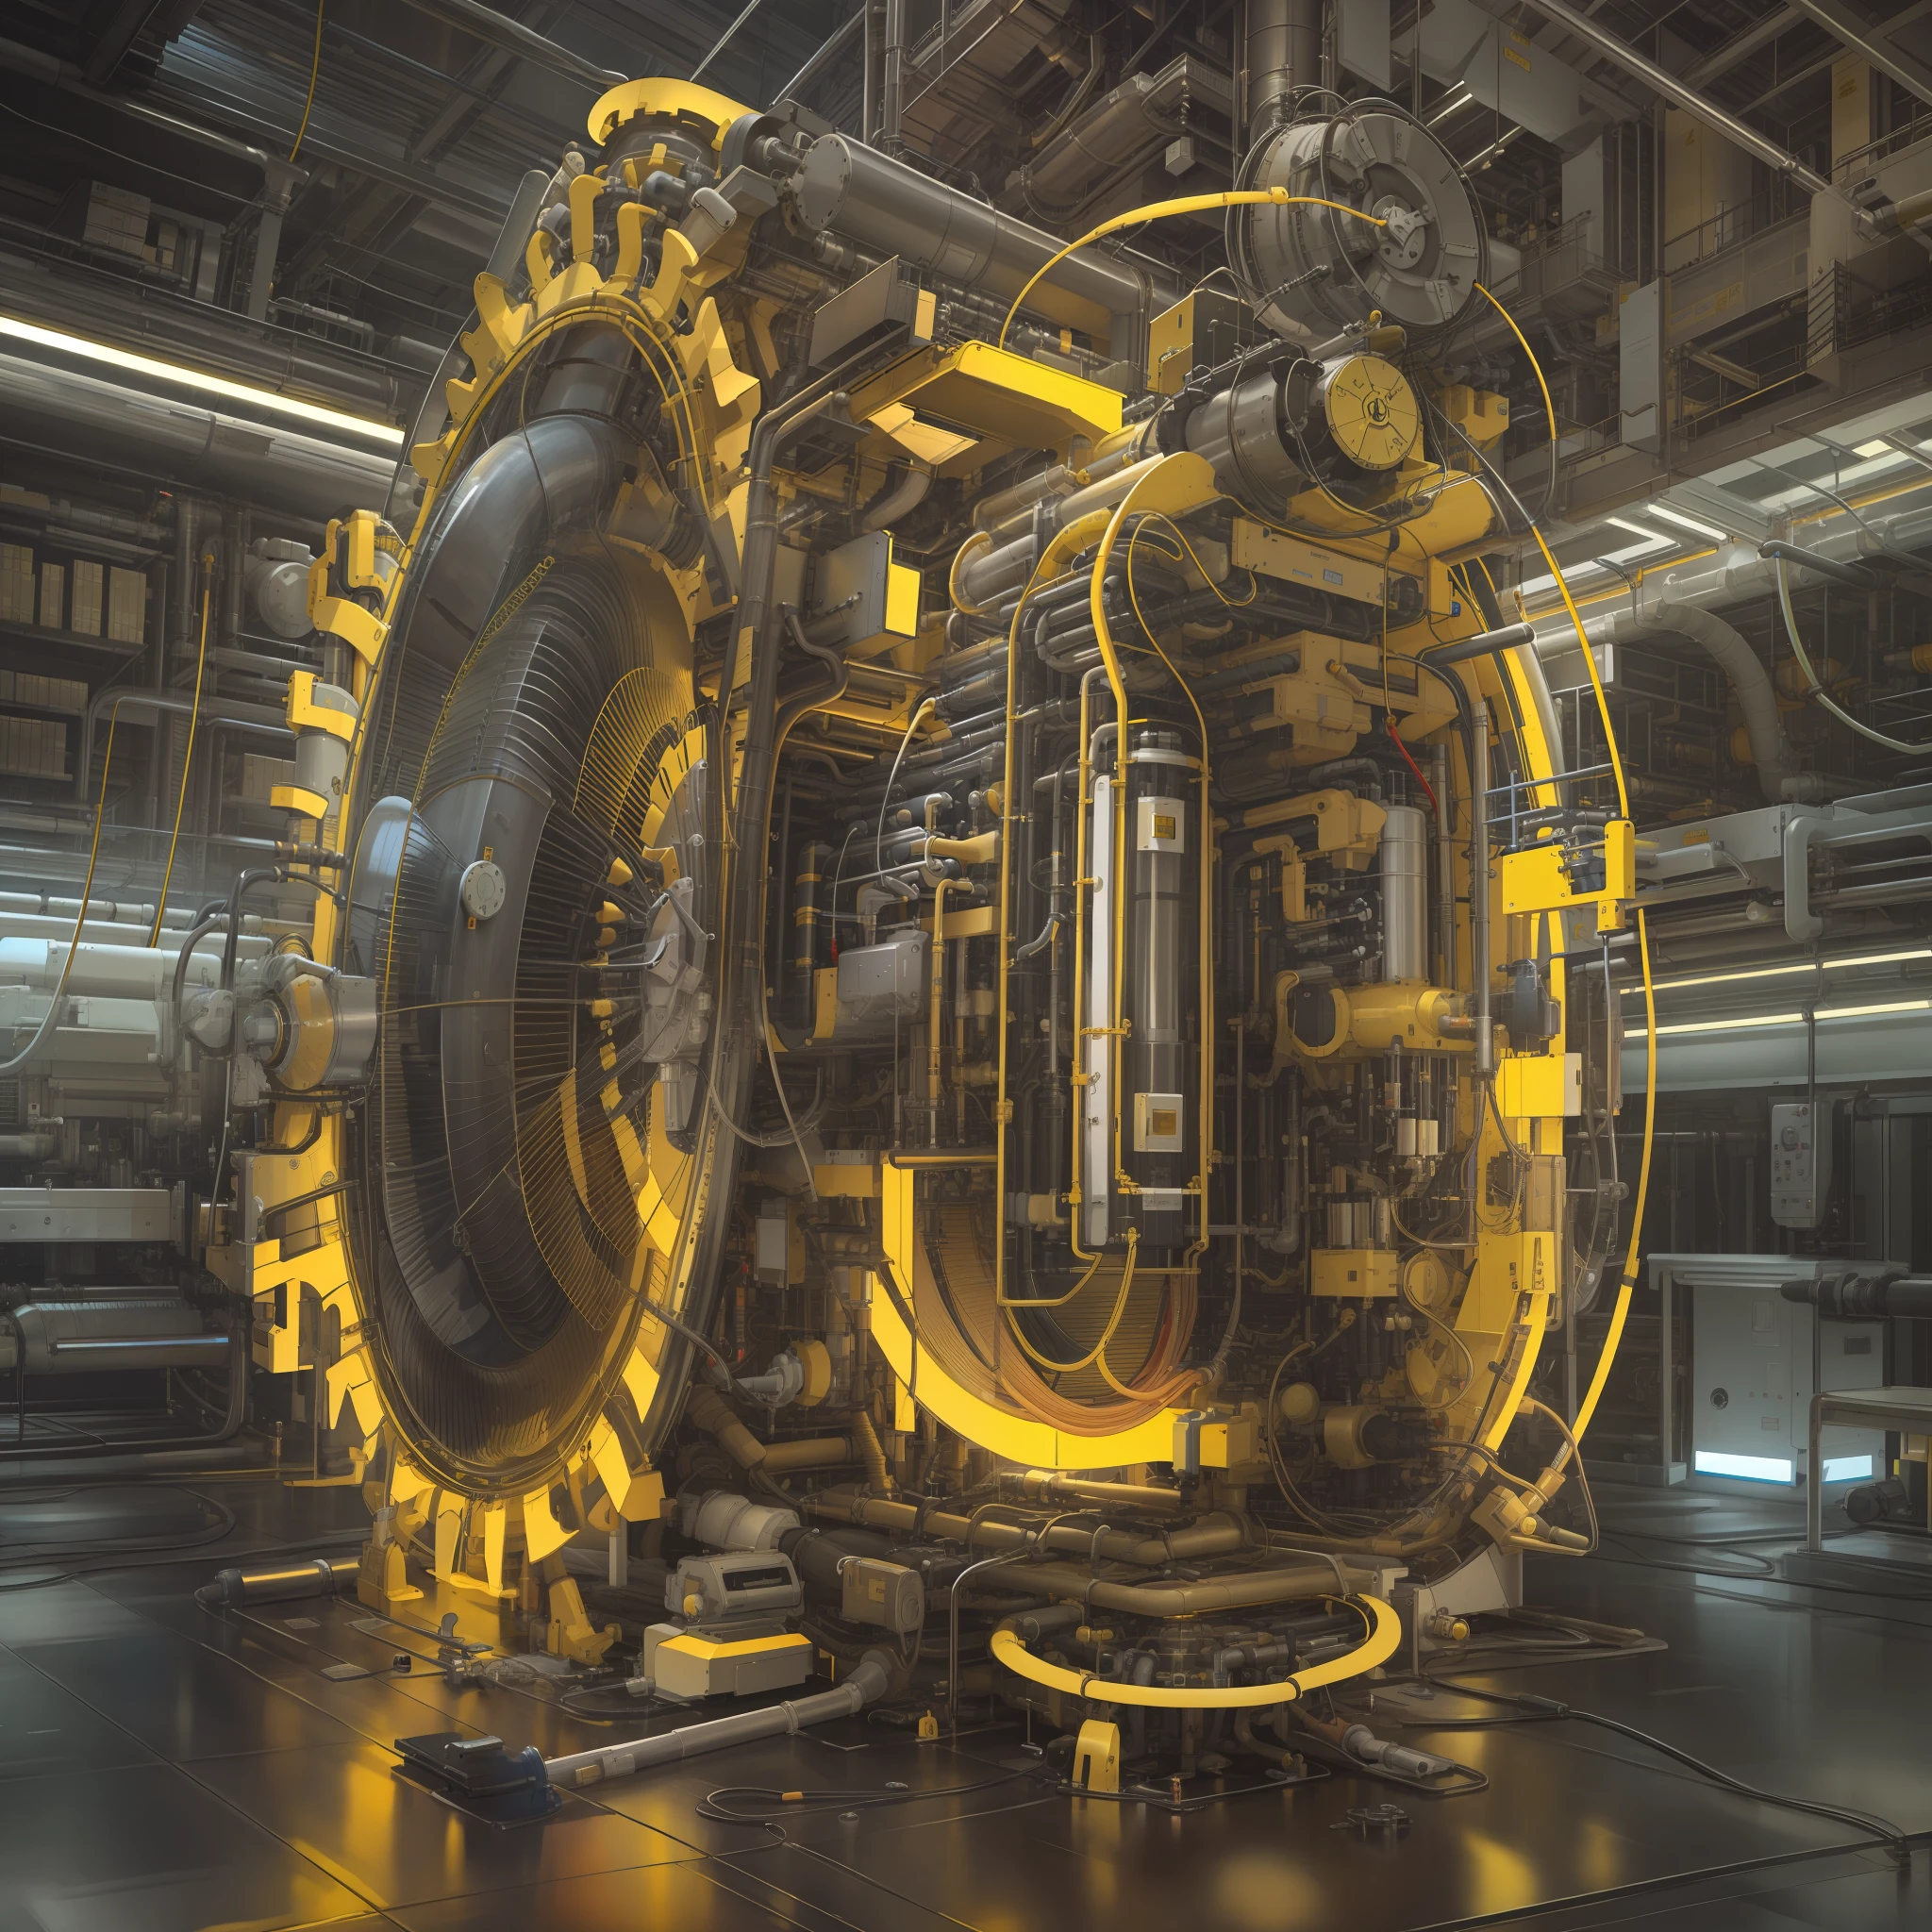 製作管狀粒子產生器, 非常详细, 超詳細, 現代且技術先進. 鲜艳的色彩, 黄色光芒是未来的时间机器.